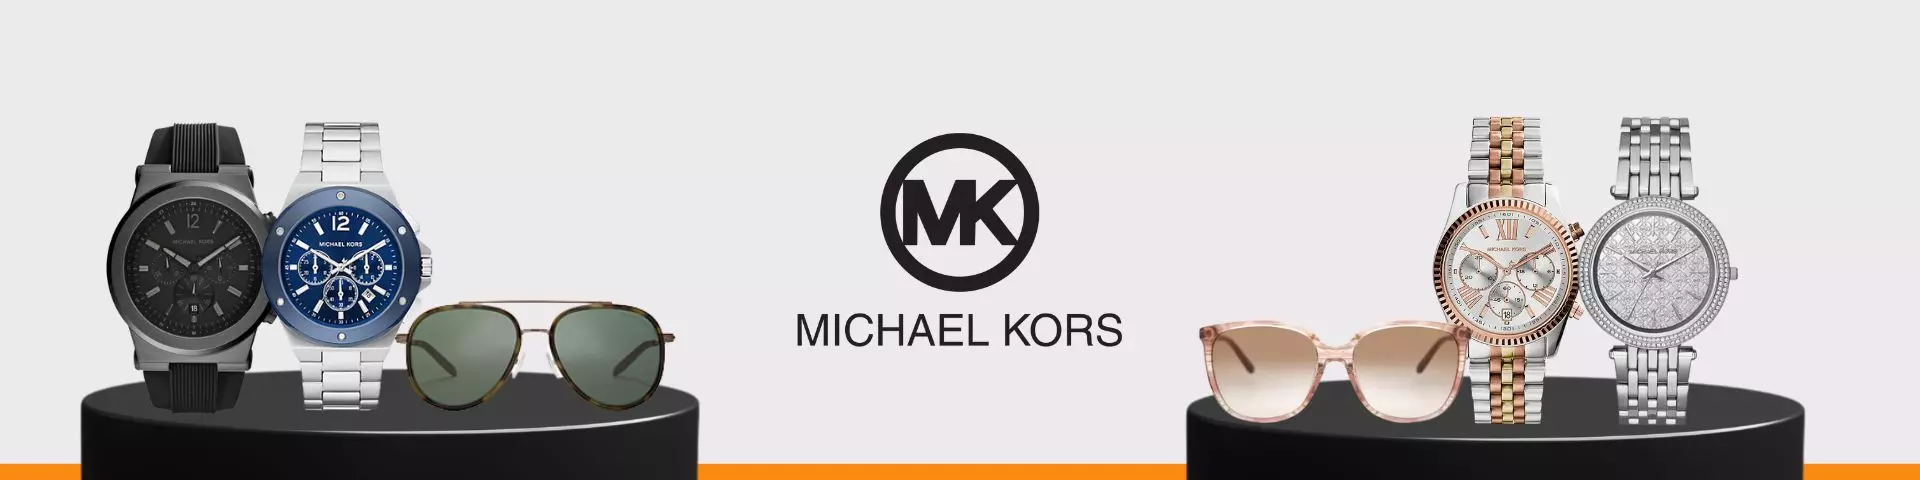 Lunette et Montre Michael Kors pour Homme et Femme prix Lunette et Montre Michael Kors Tunisie